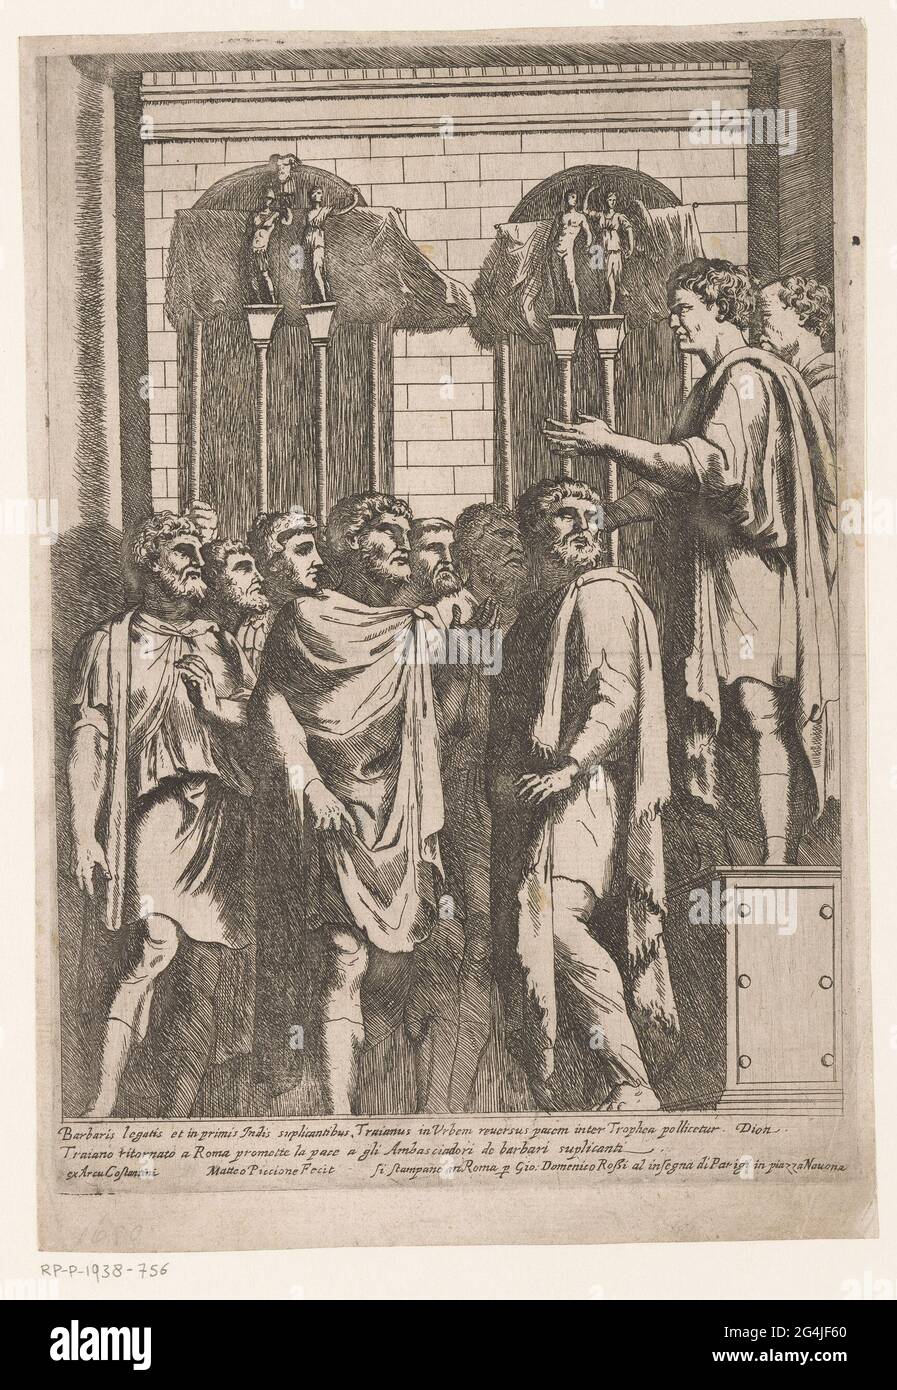 Trajan promet la paix; bas-reliefs sur l'Arche de Constantine. L'empereur  romain Trajanus est revenu à Rome et promet la paix à un groupe de bureaux  des barbares. Dans le sous-marin, une ligne